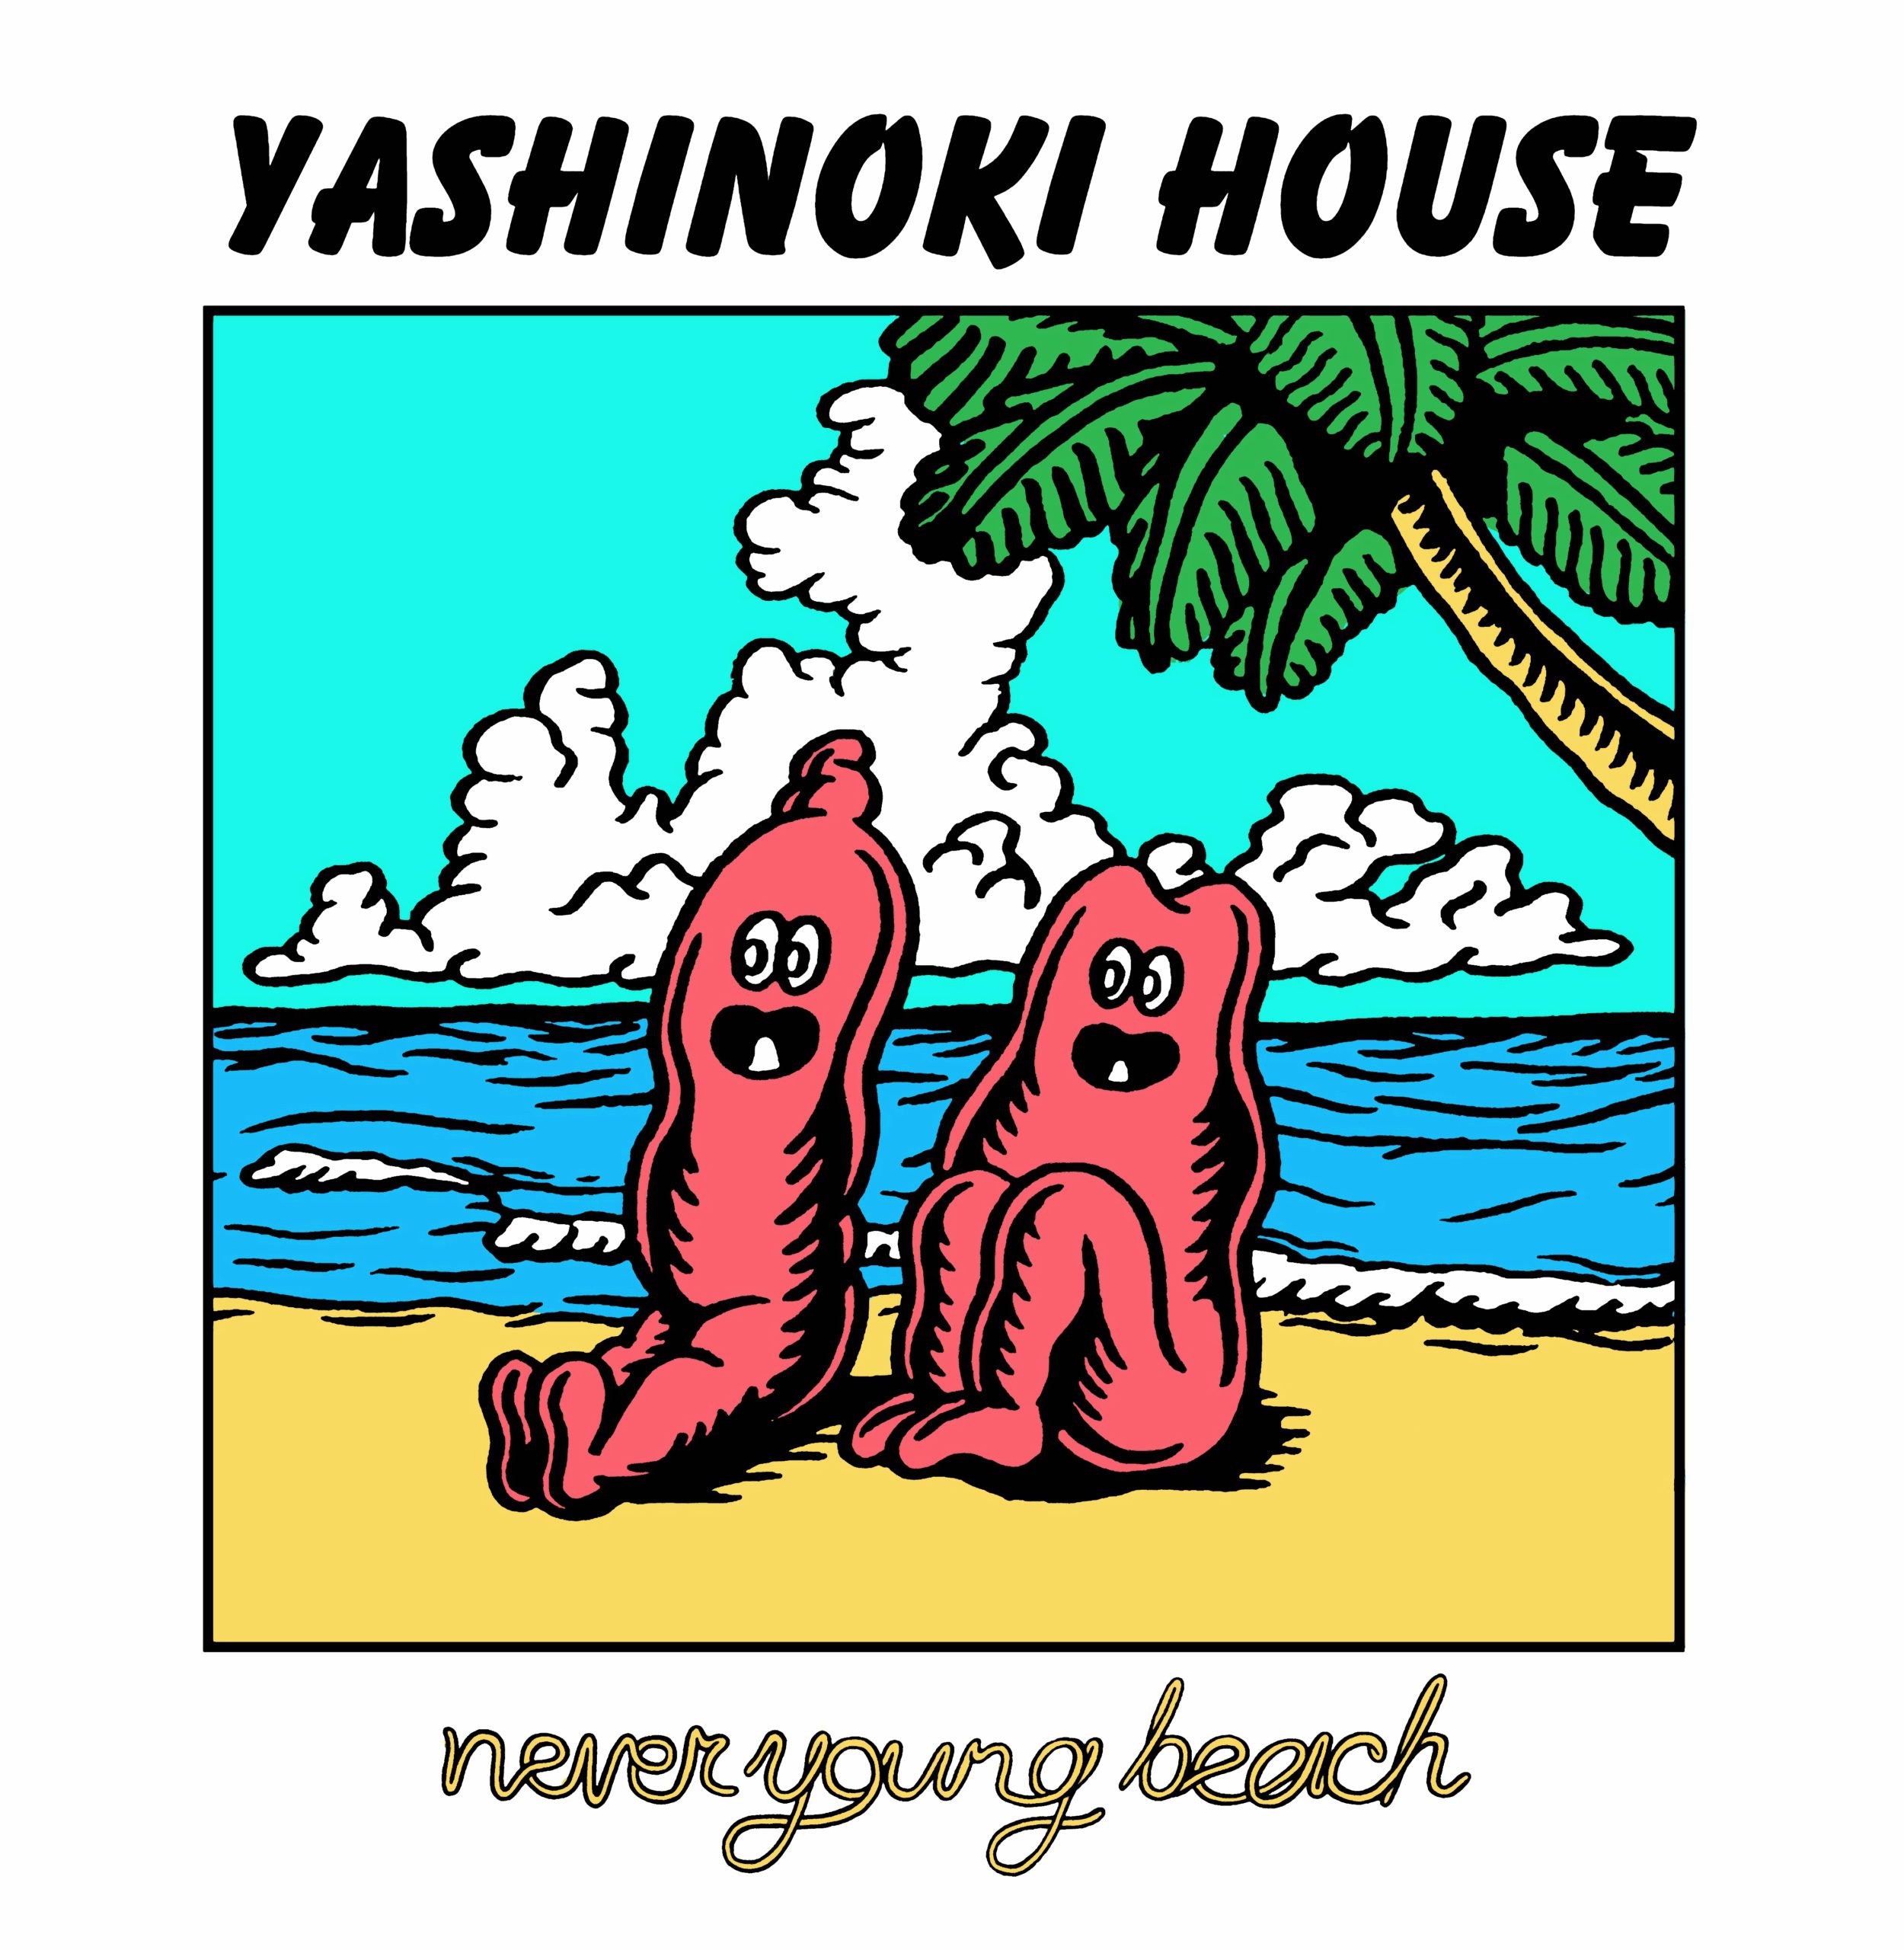 盤面ジャケット共に良好ですが【レコード】Never Young Beach YASHINOKI HOUSE